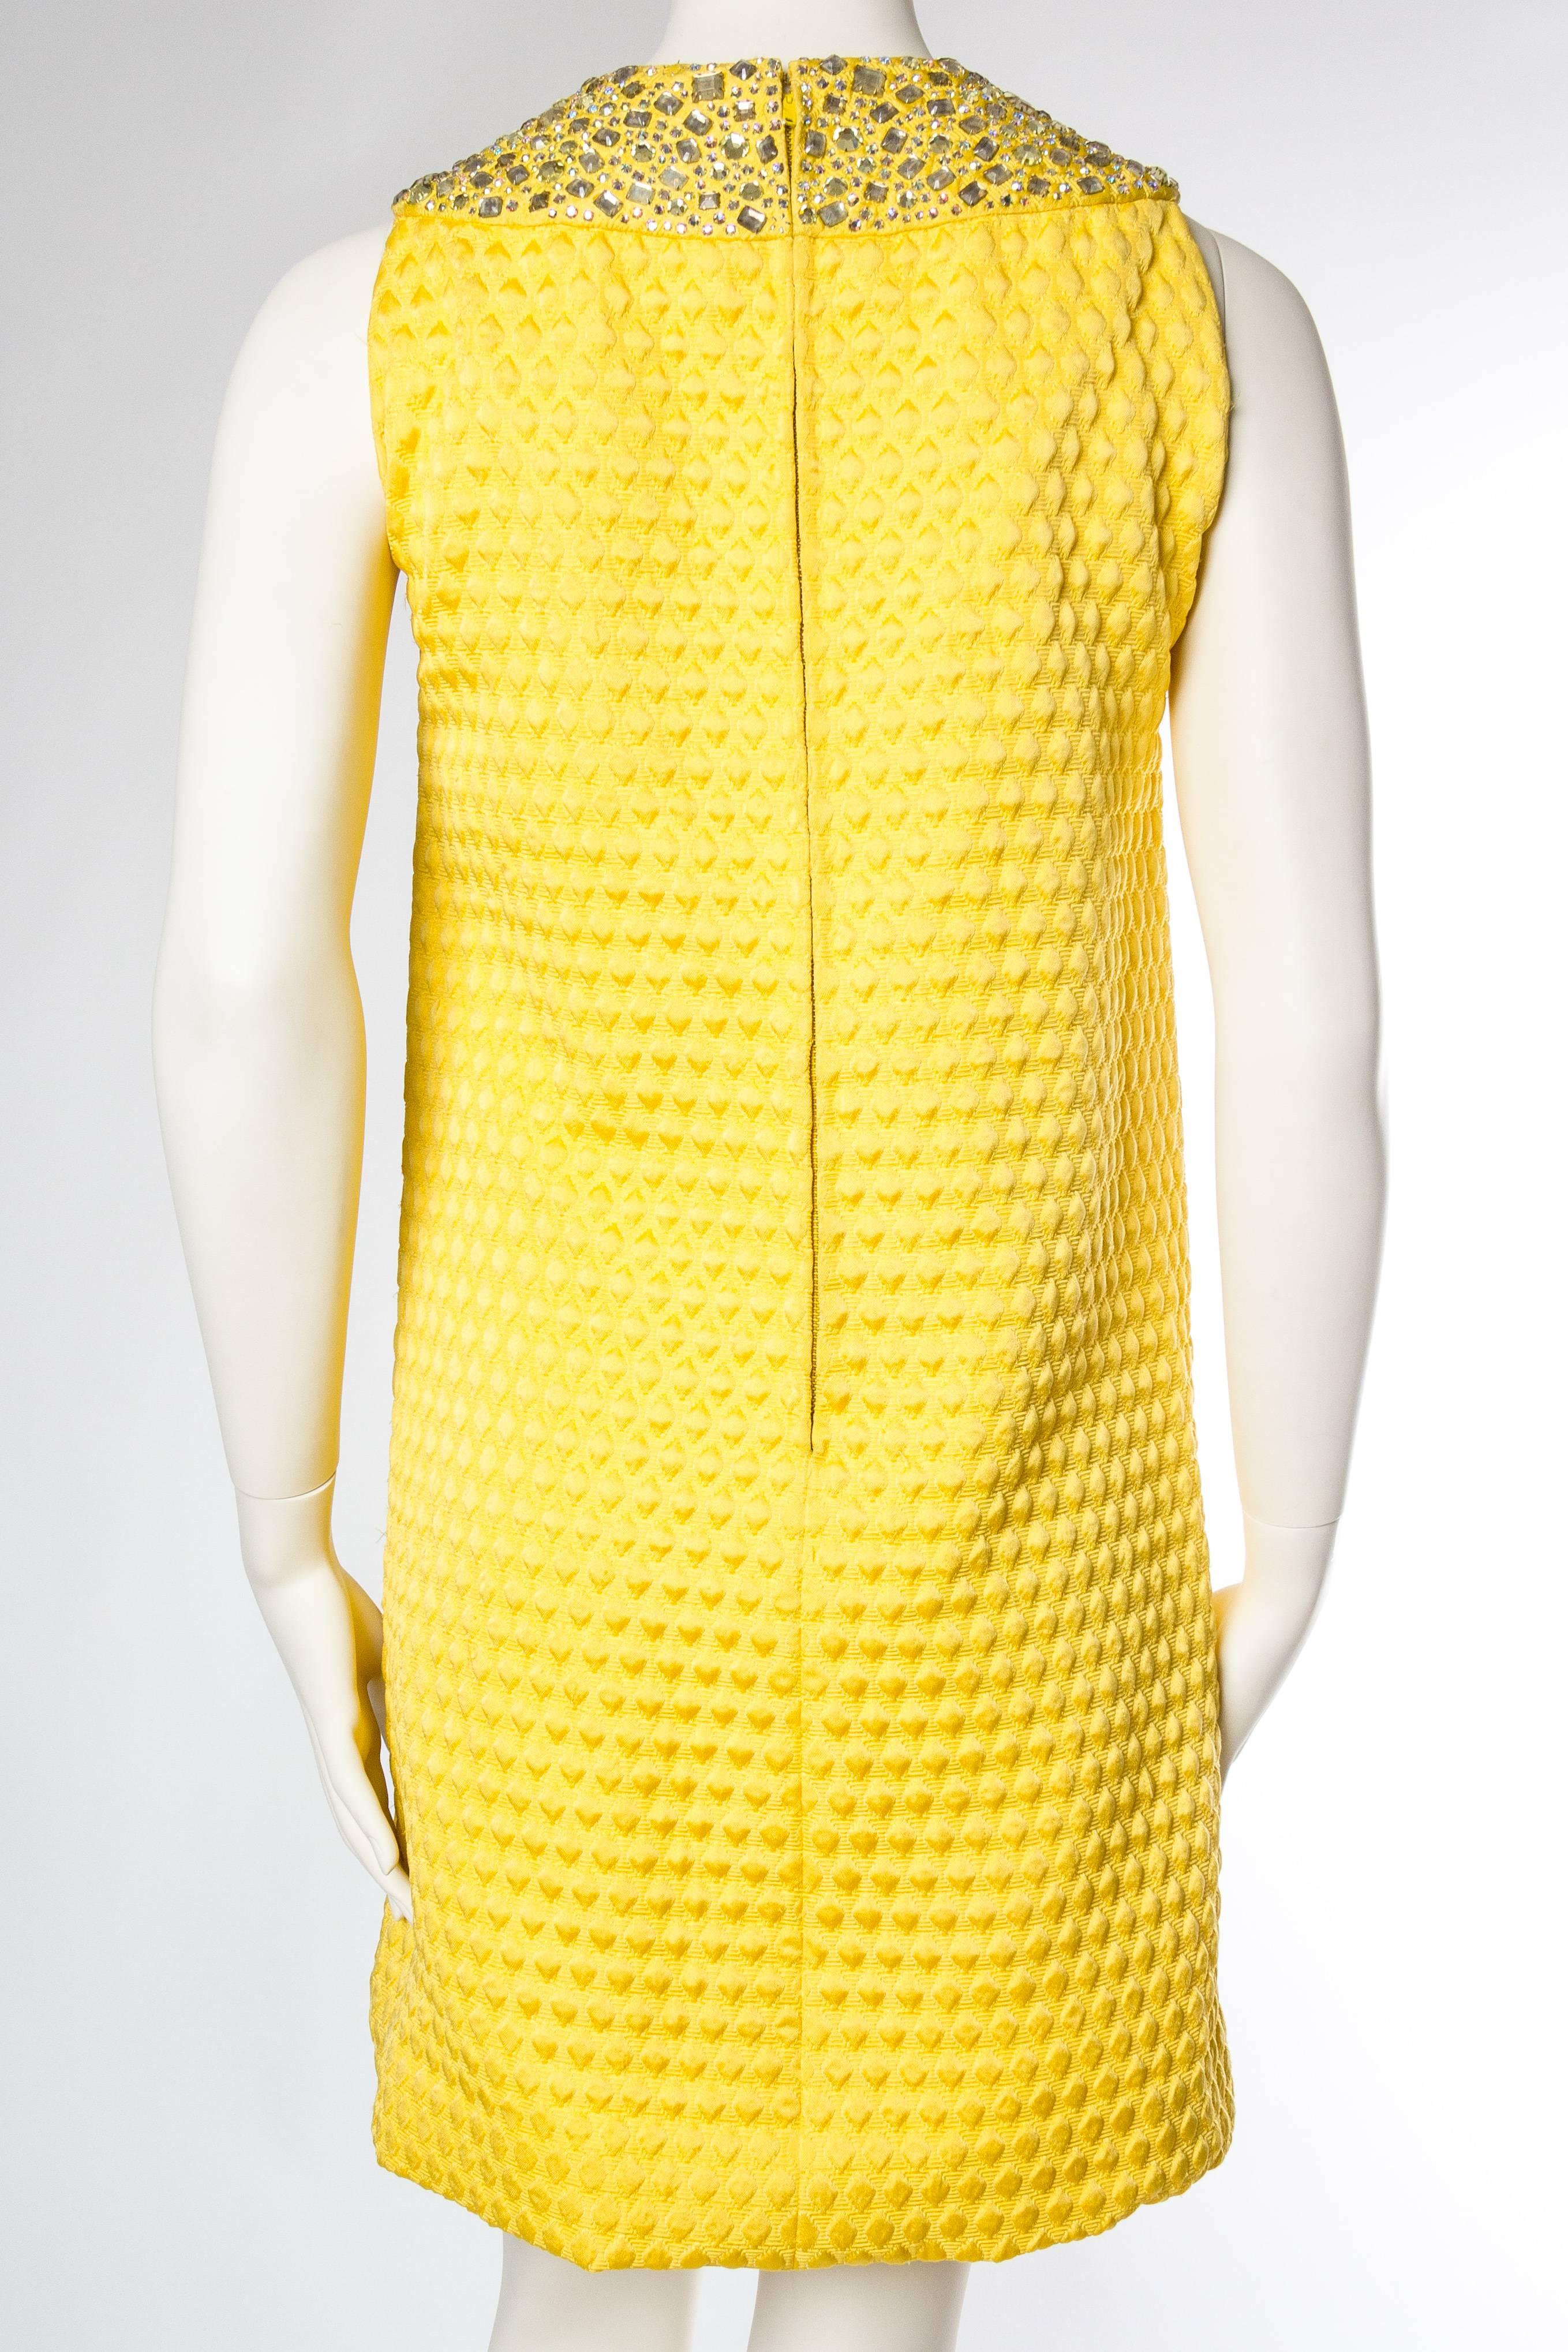 1960 OSCAR DE LA RENTA Yellow Geometric Rayon Blend Matelassé Cocktail Dress Wi 1